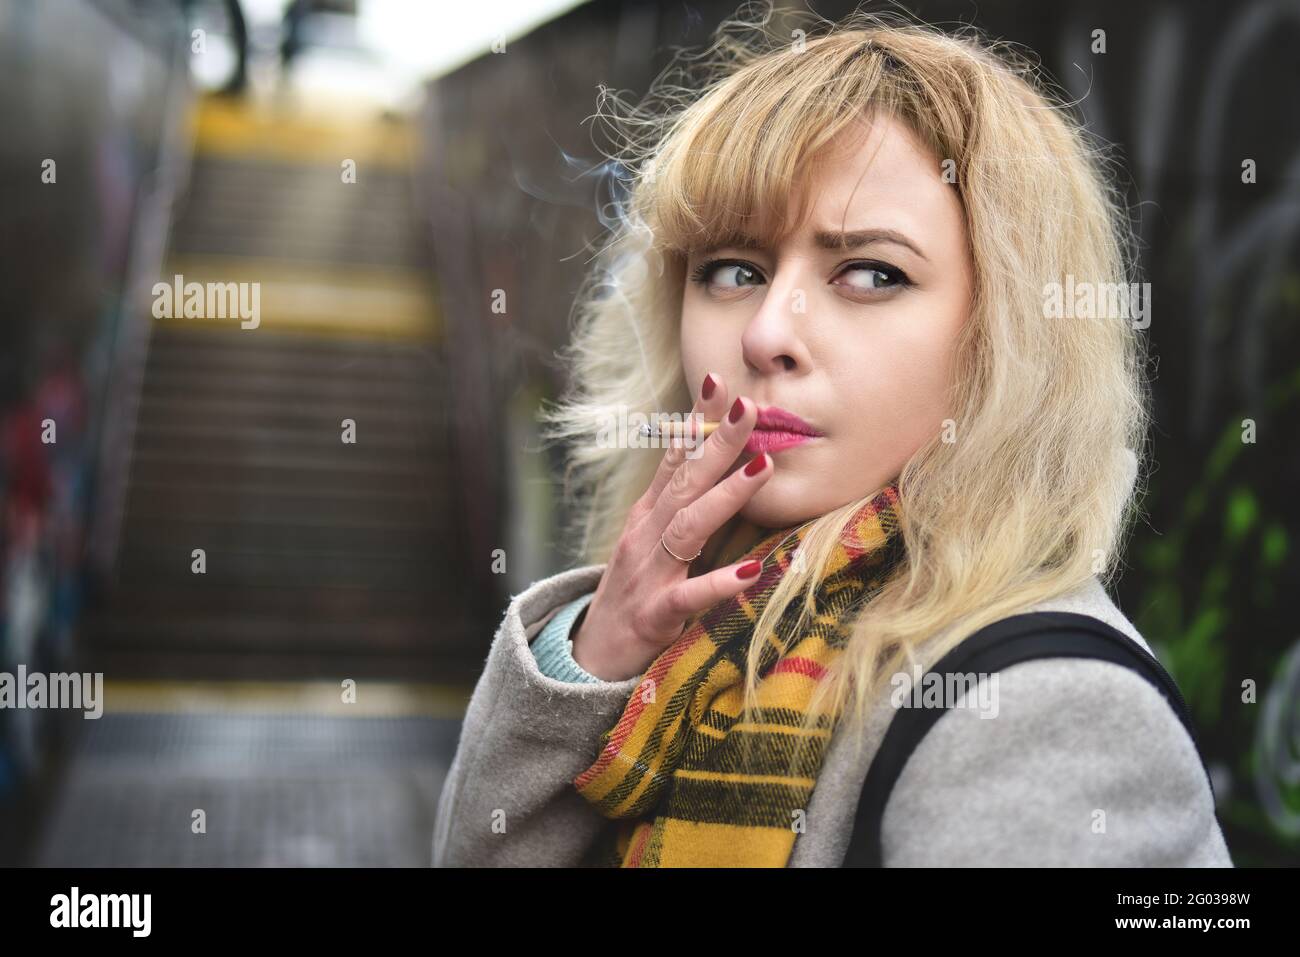 Mujer rubia joven seria que fuma un cigarrillo y mira a un lado en el pasaje subterráneo Foto de stock